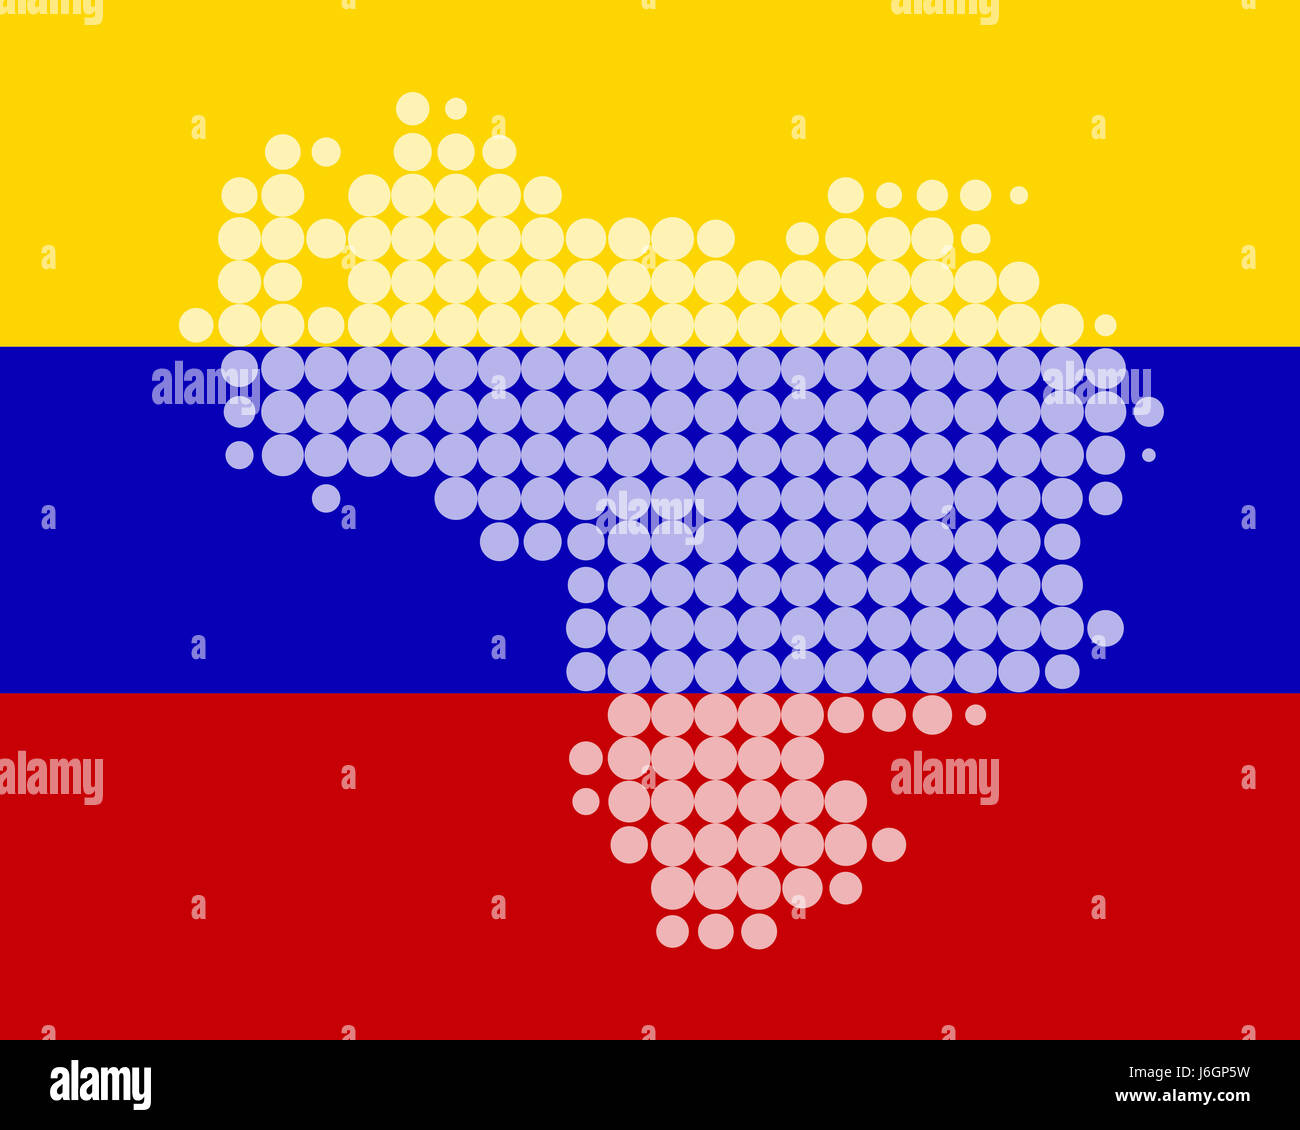 Bandiera america del sud america card venezuela atlas mappa del mondo mappa banner Foto Stock